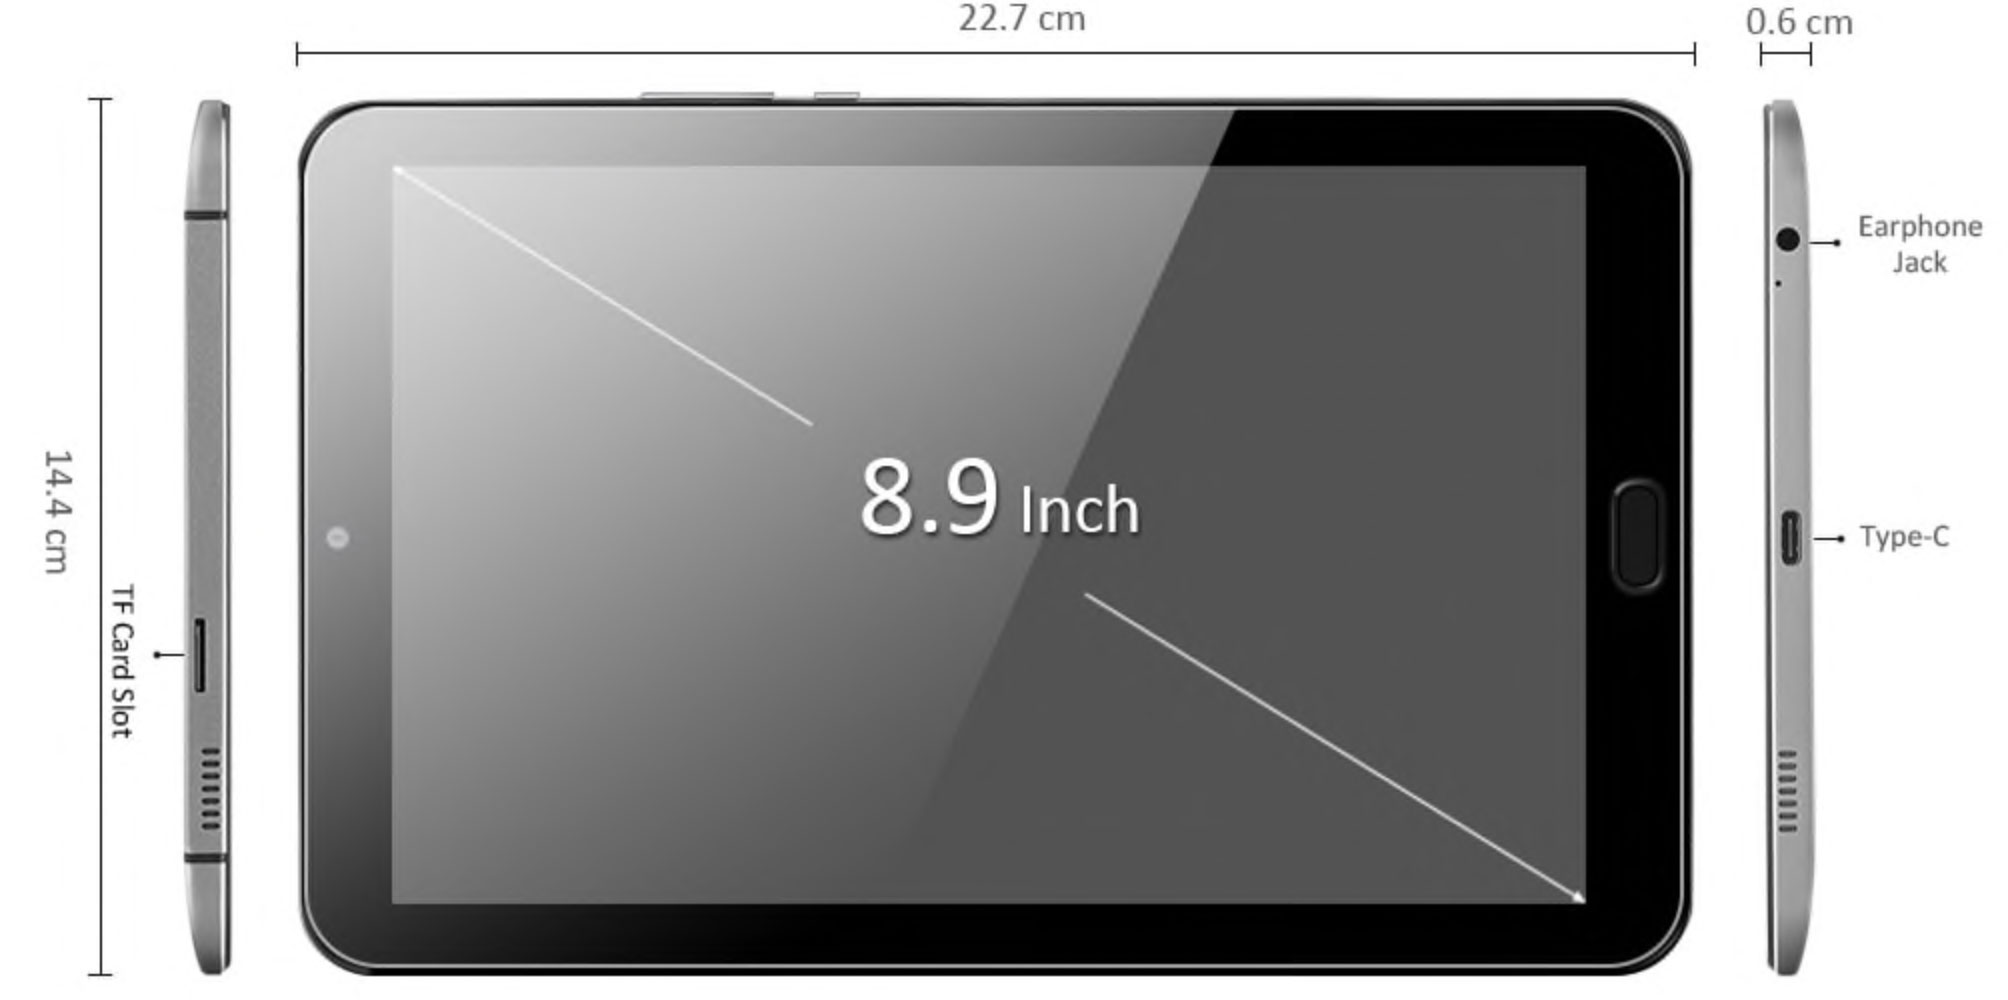 9 диагональ в см. ALLDOCUBE freer x9. Планшет Huawei 10 дюймов размер в см. Диагональ 10 5 дюймов в сантиметрах экран планшета. Планшет 7.9 дюймов габариты.